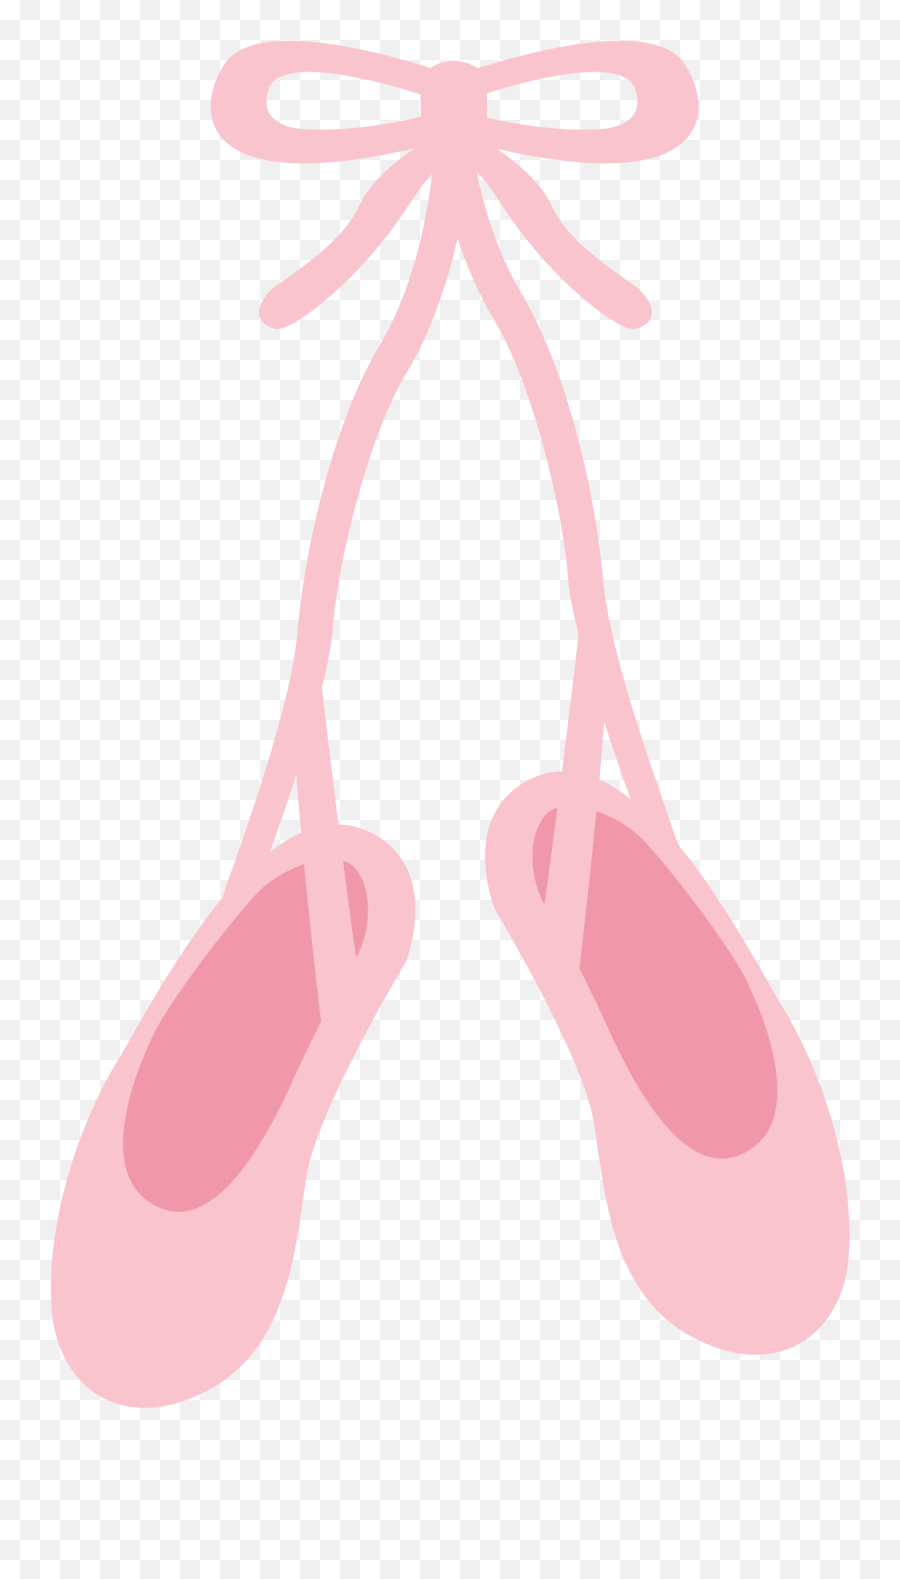 Ballet Dancer Shoe Transprent - Pink Ballet Shoes Printable Emoji,Ballet Slippers Clipart